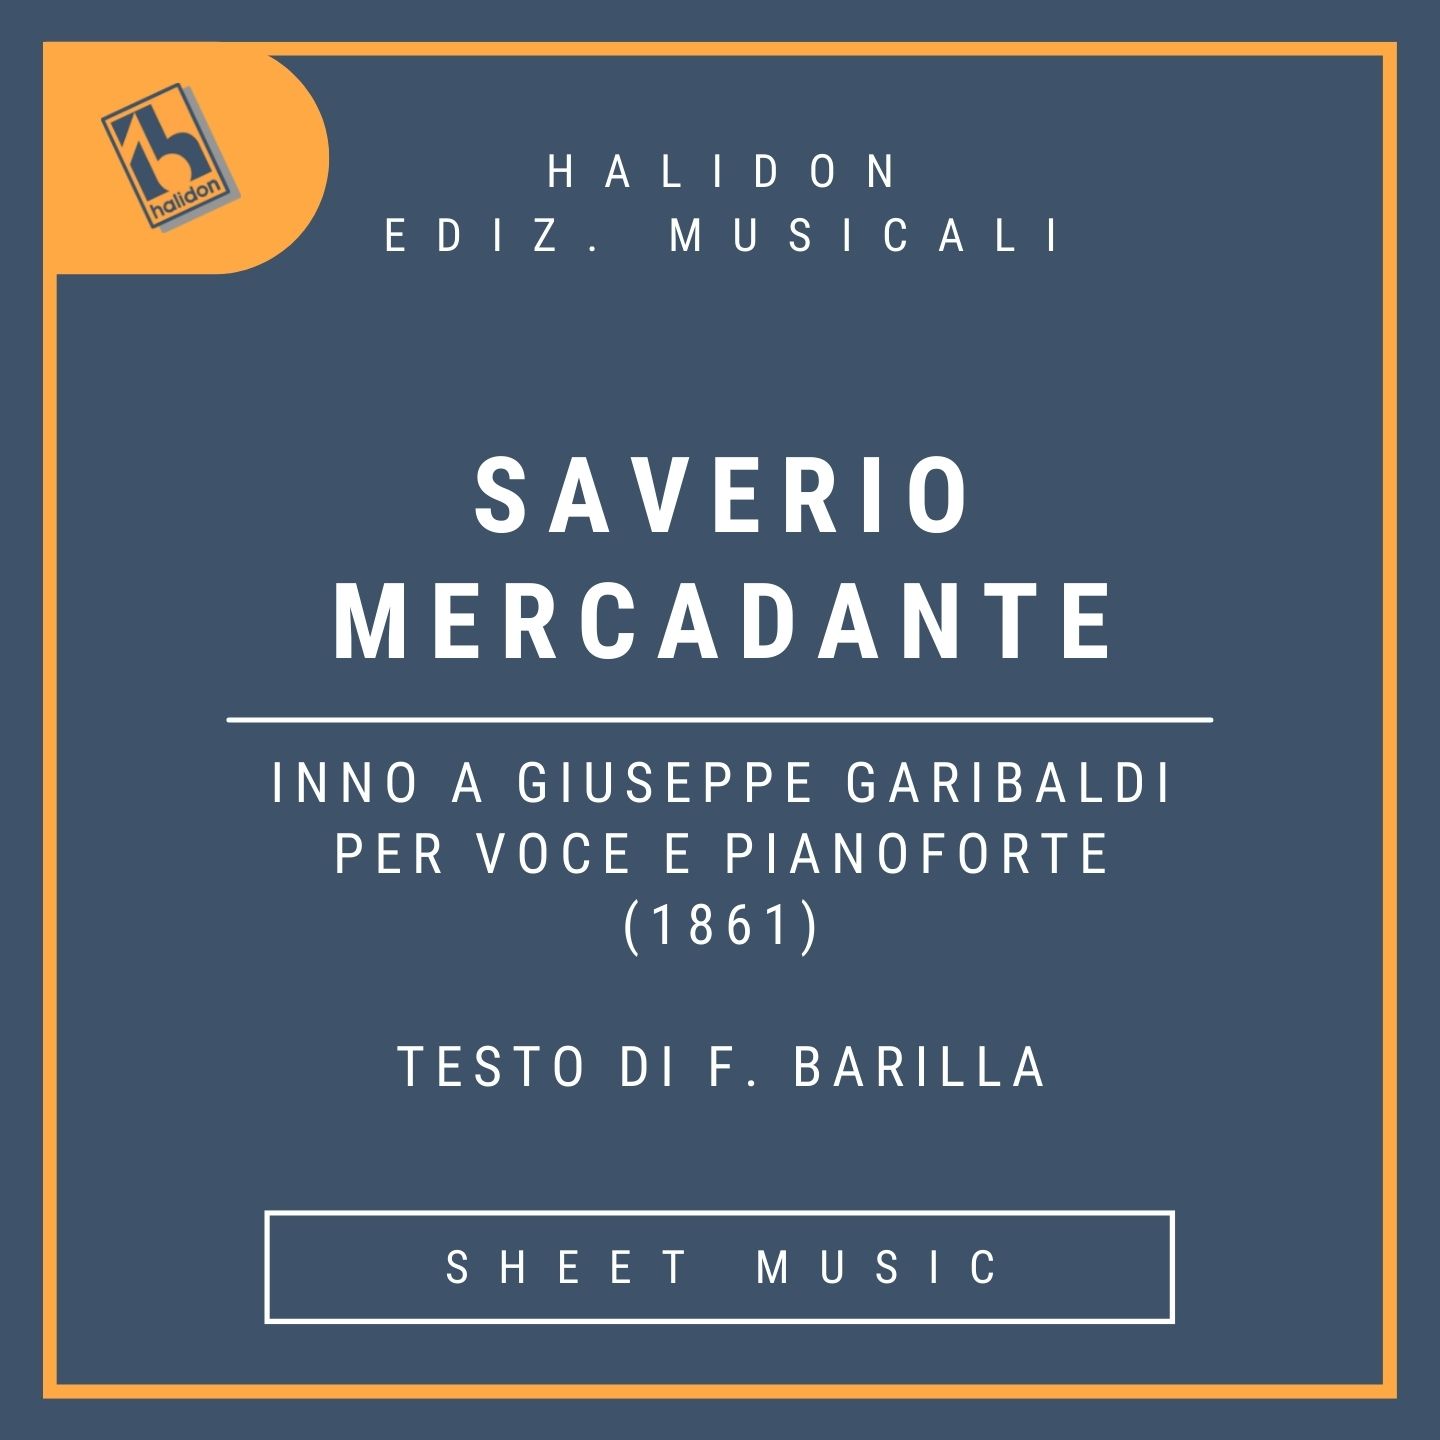 Saverio Mercadante - Inno a Giuseppe Garibaldi per voce e pianoforte